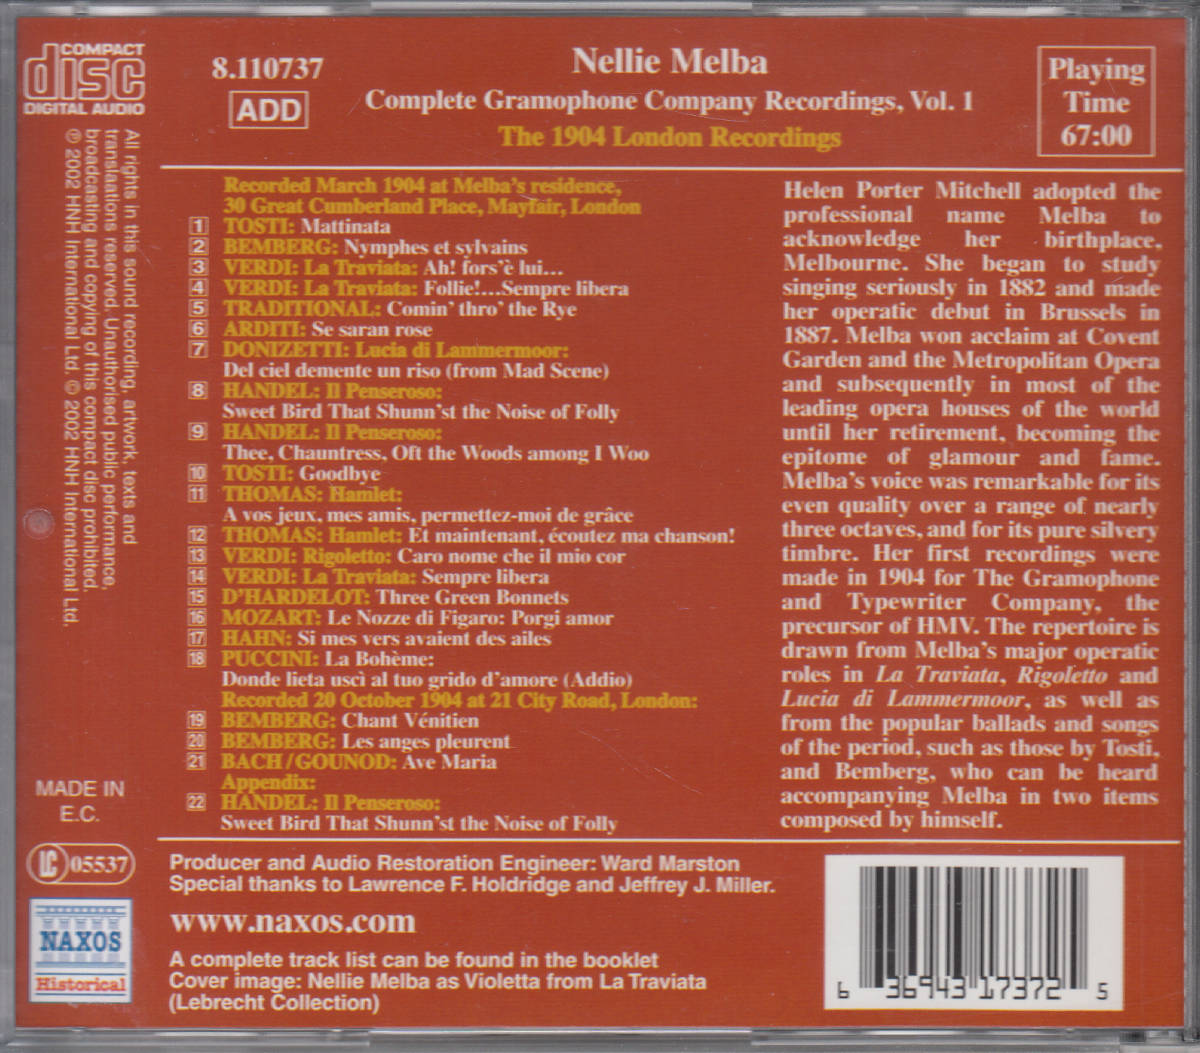 ◆送料無料◆ネリー・メルバ/グラモフォン完全録音集1 Import v5373_画像2